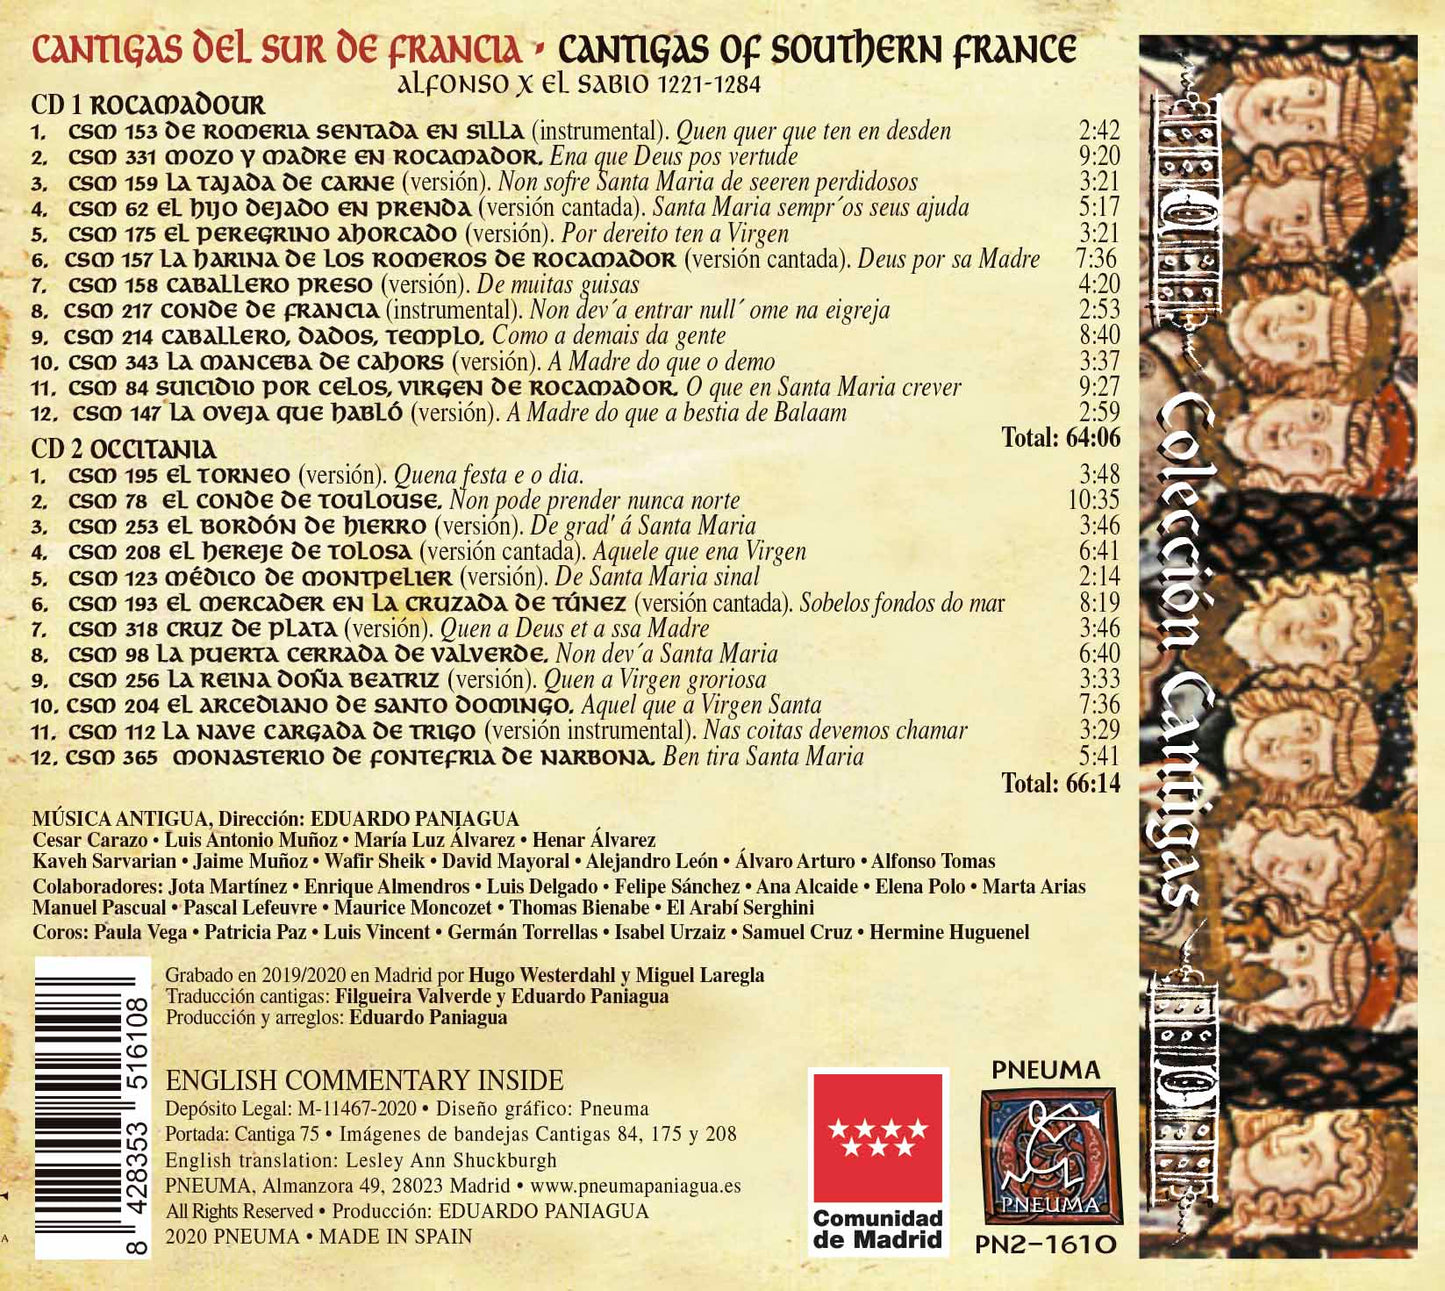 PN 1610 CANTIGAS DEL SUR DE FRANCIA, OCCITANIA Y ROCAMADOUR, DOBLE CD)